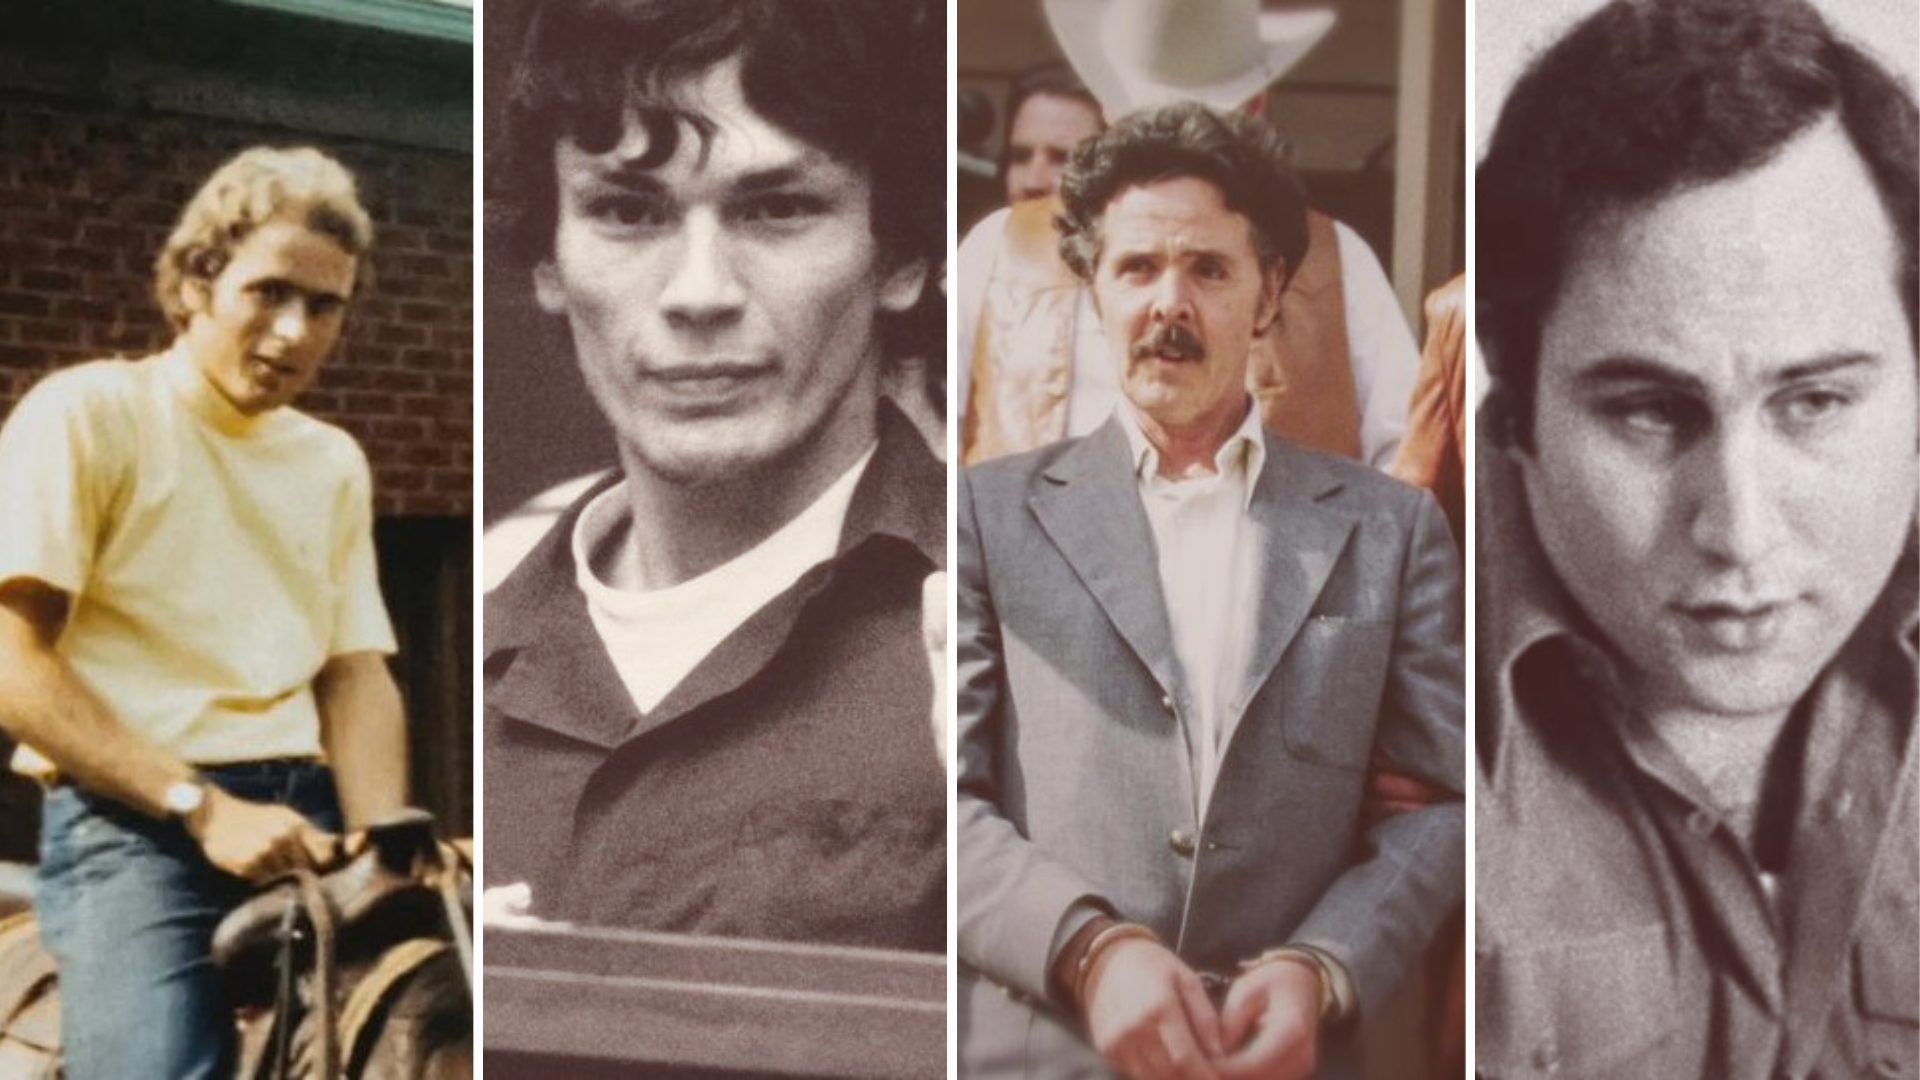 Serial killers  Conheça 7 assassinos em série mais famosos do mundo -  Canaltech